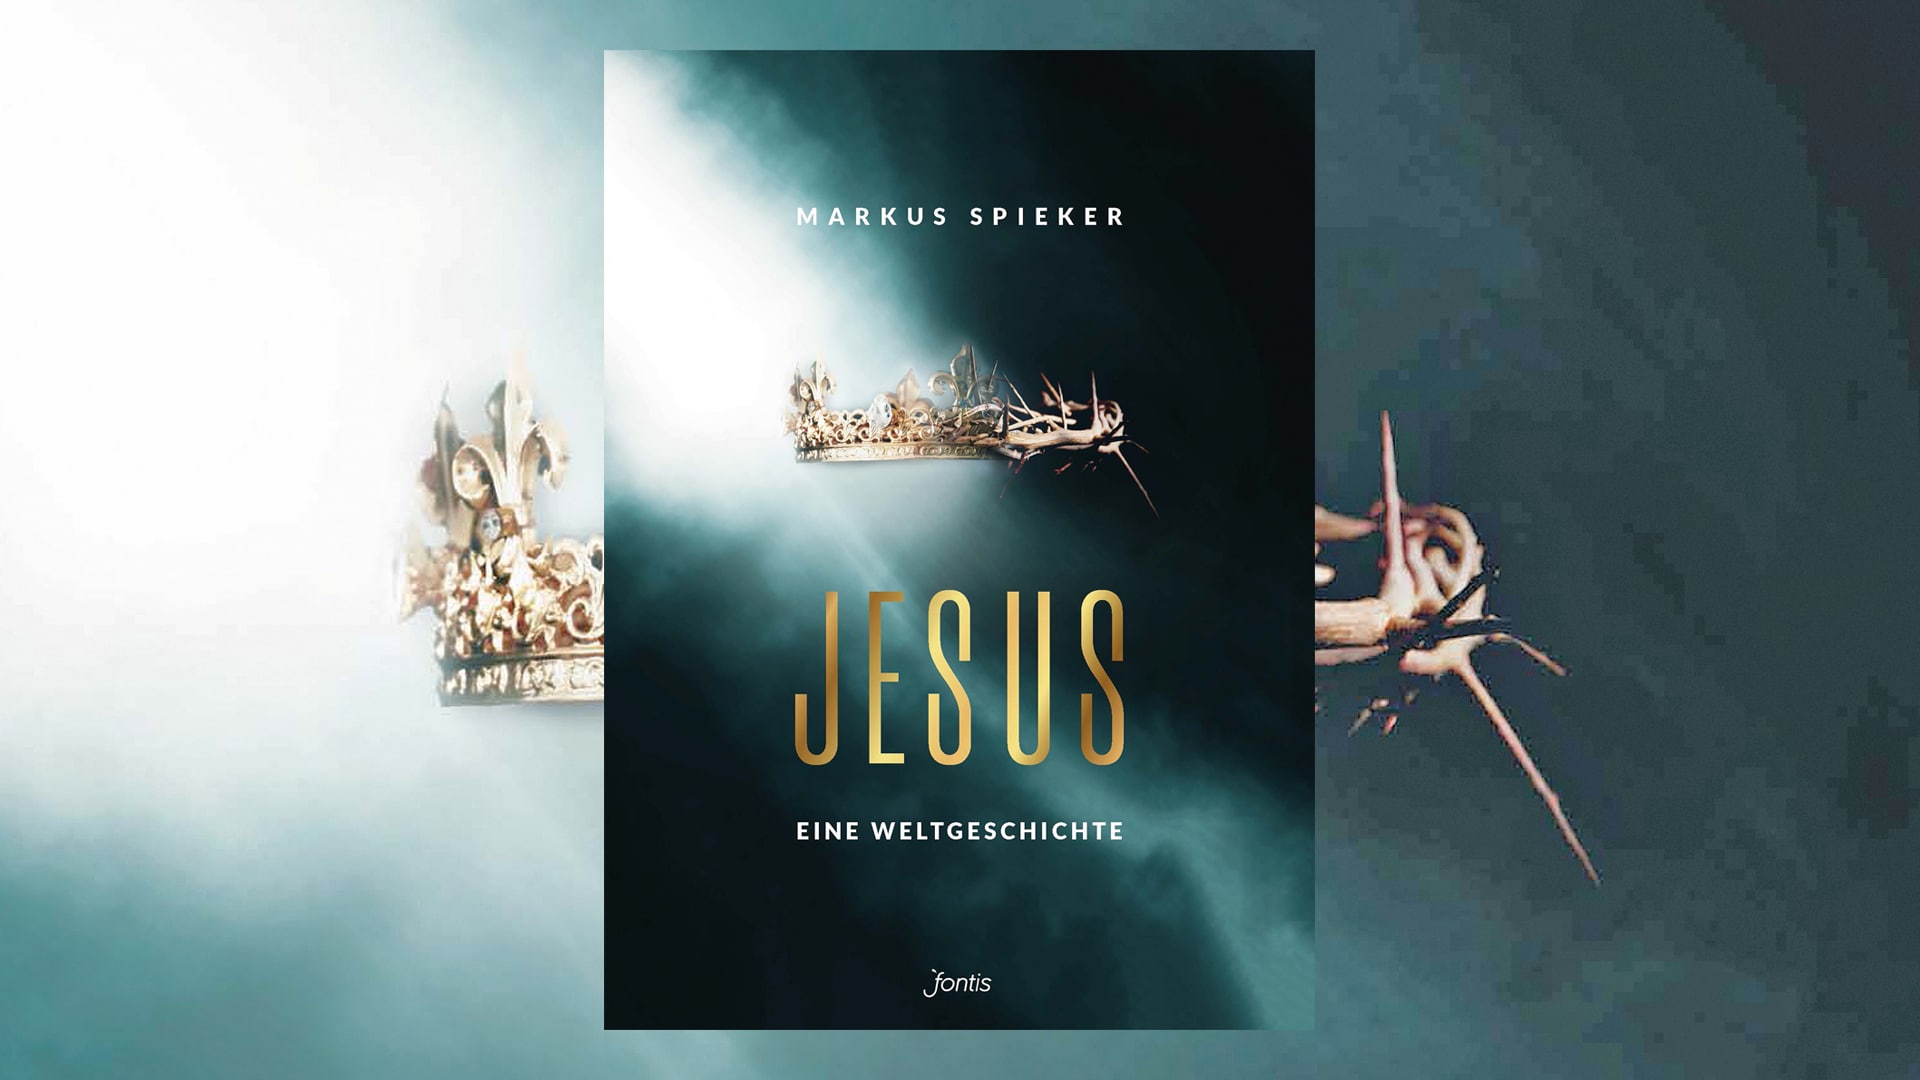 Das Jesus-Buch von Markus Spieker ist im September erschienen